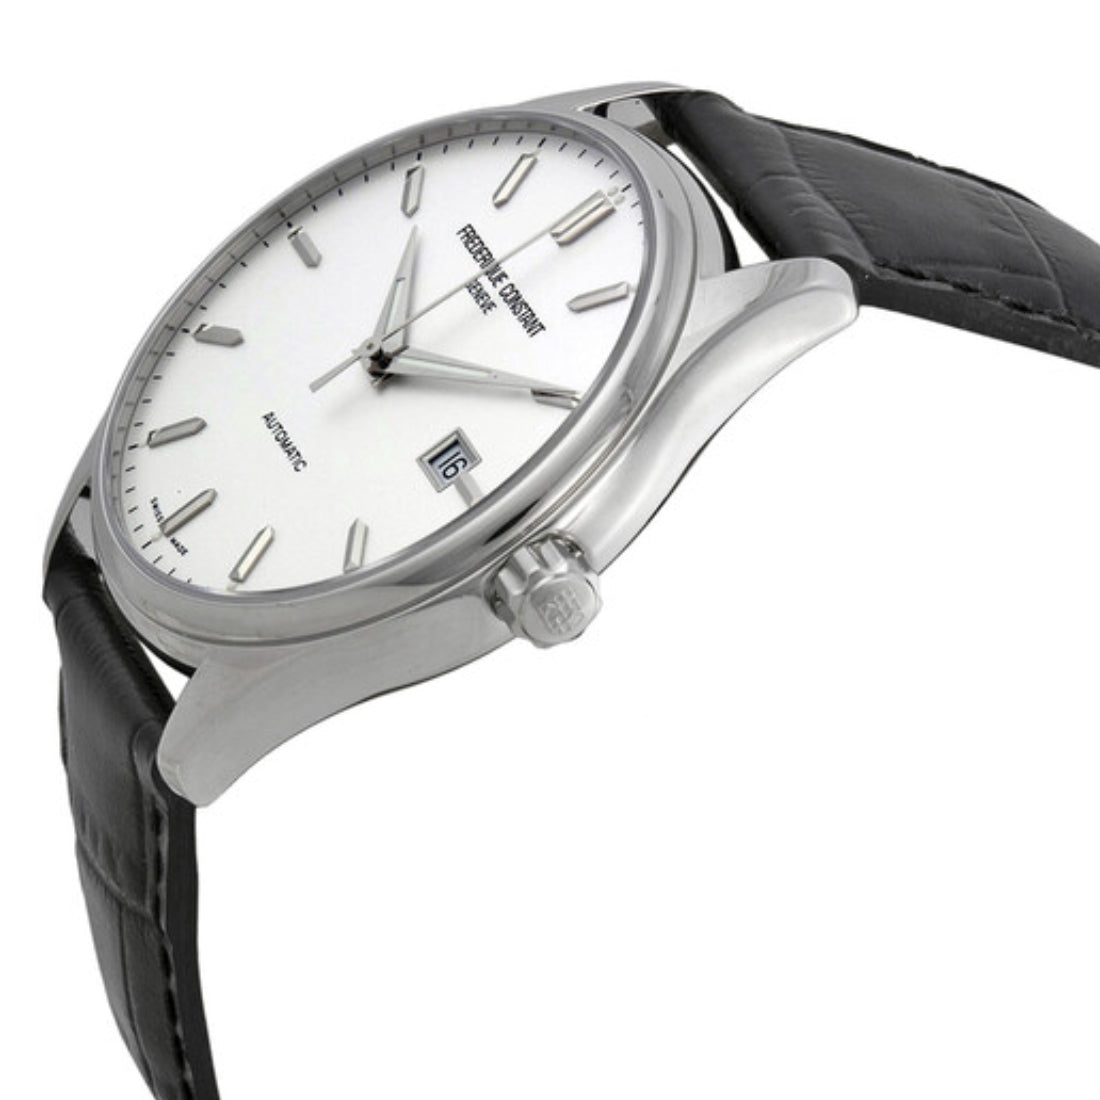 ساعة فريدريك كونستانت الرجالية بحركة أوتوماتيكية ولون مينا أبيض - FC-0035